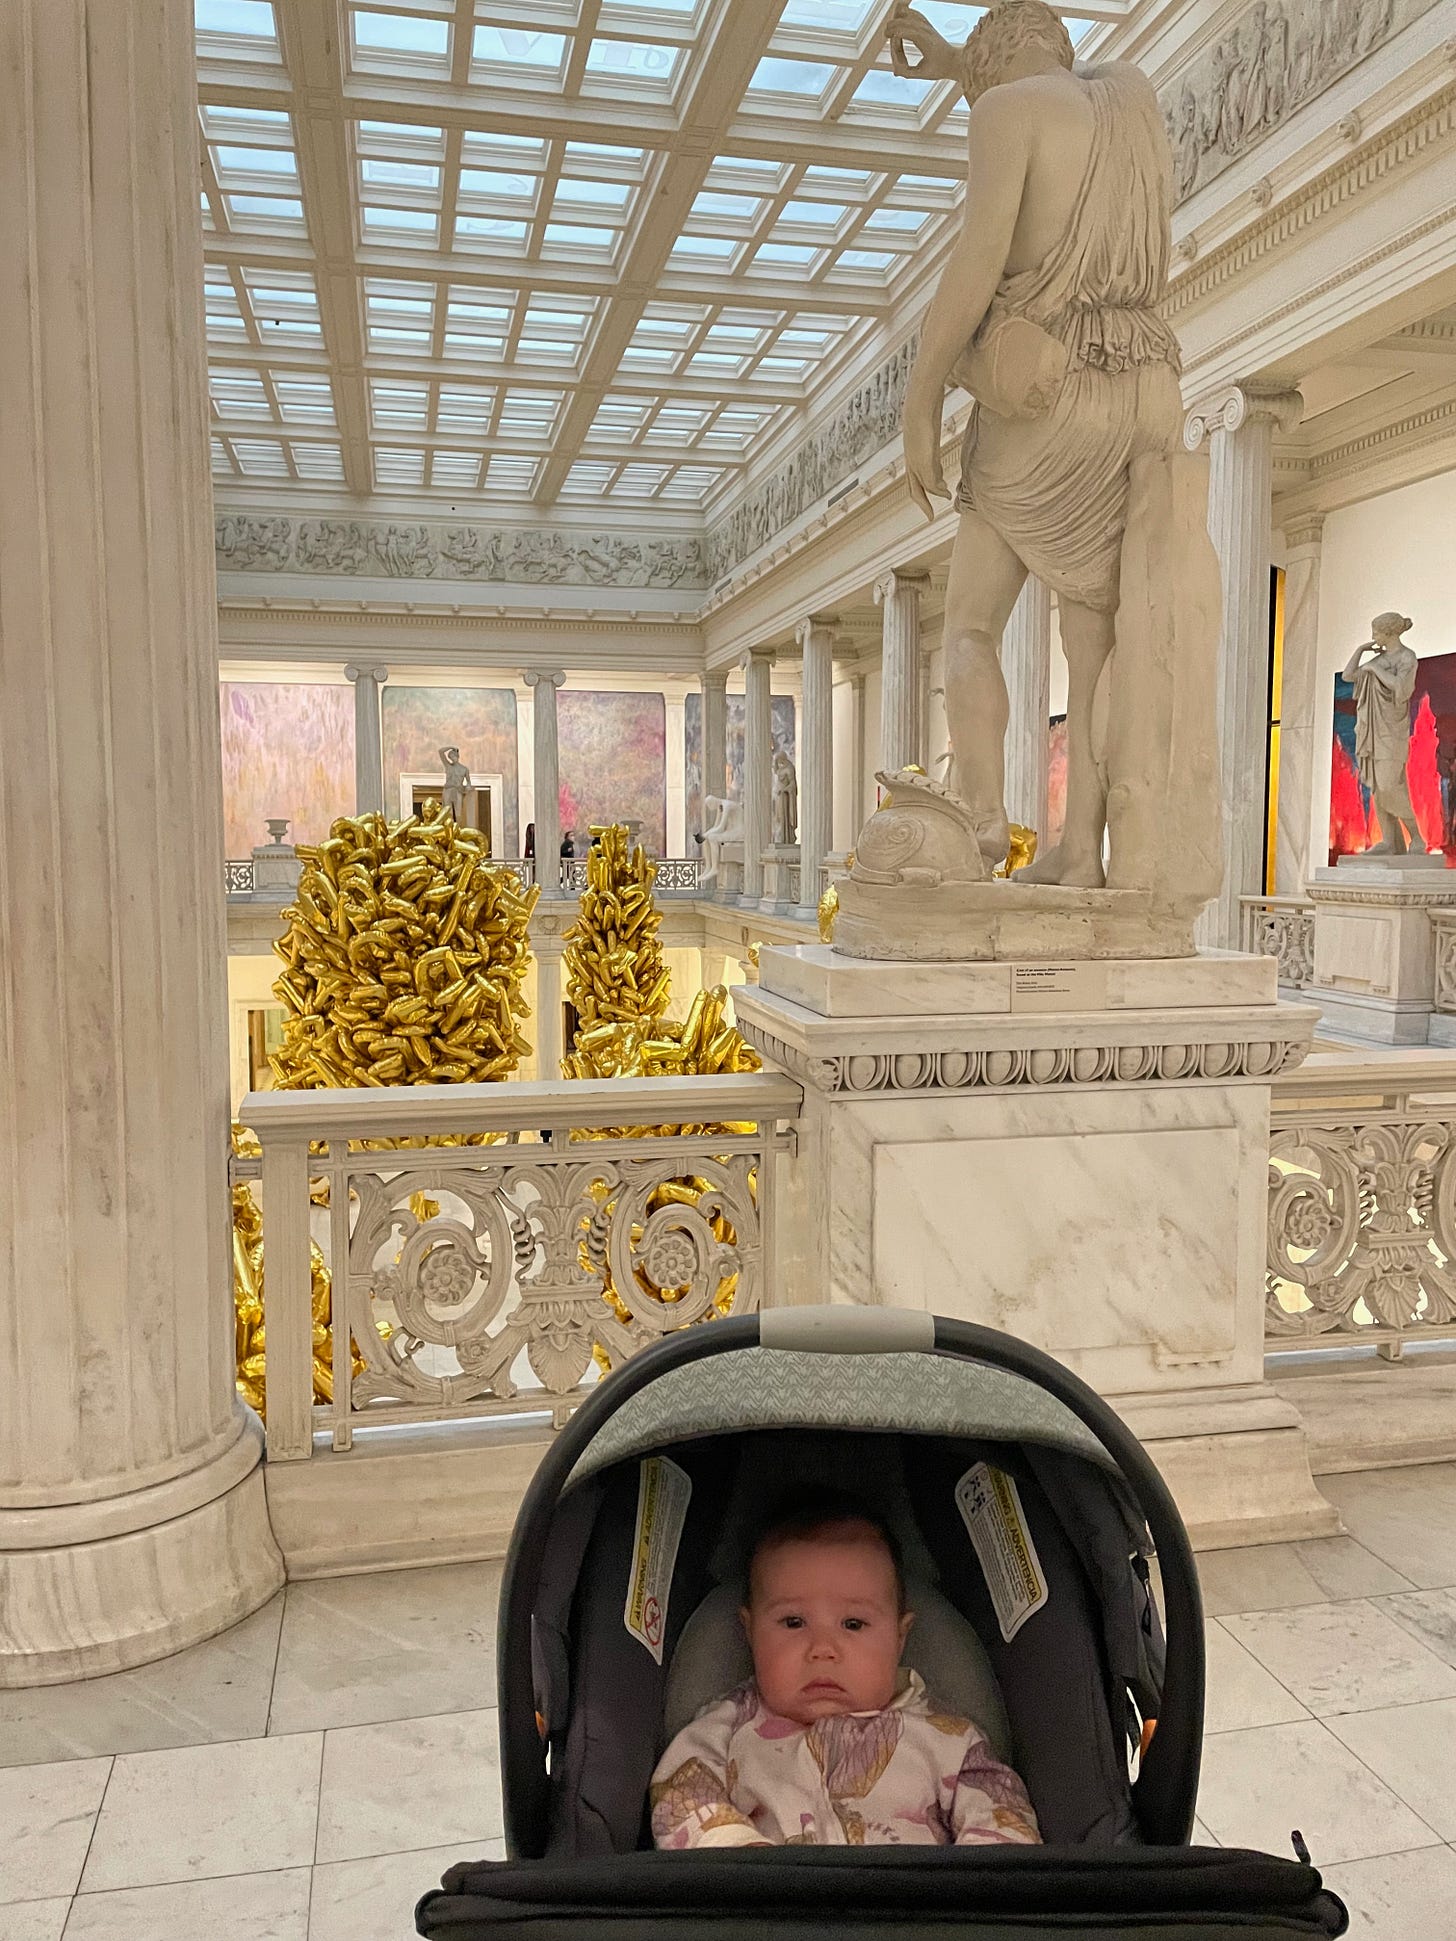 Baby in stroller in art museum.